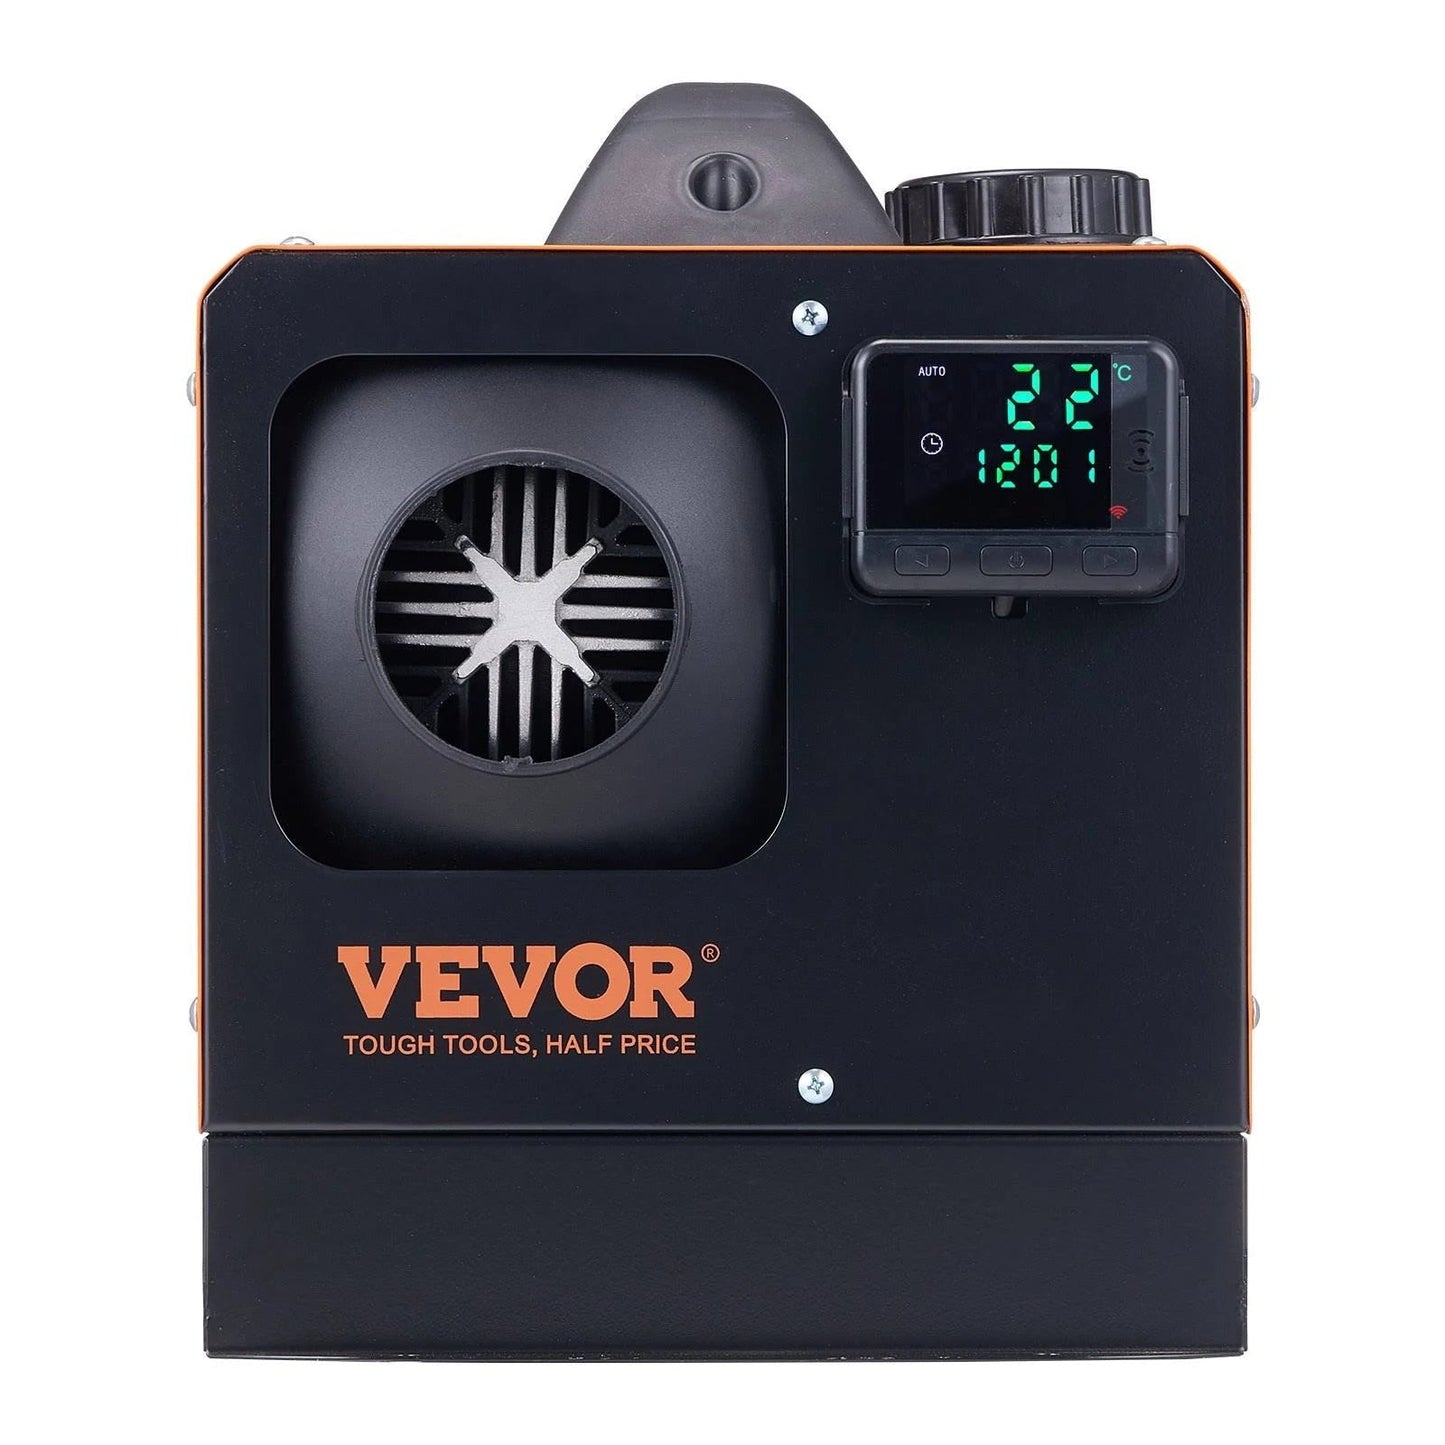 VEVOR Diesel Air Heater 27,296 BTU 12V Diesel Heater 8KW with